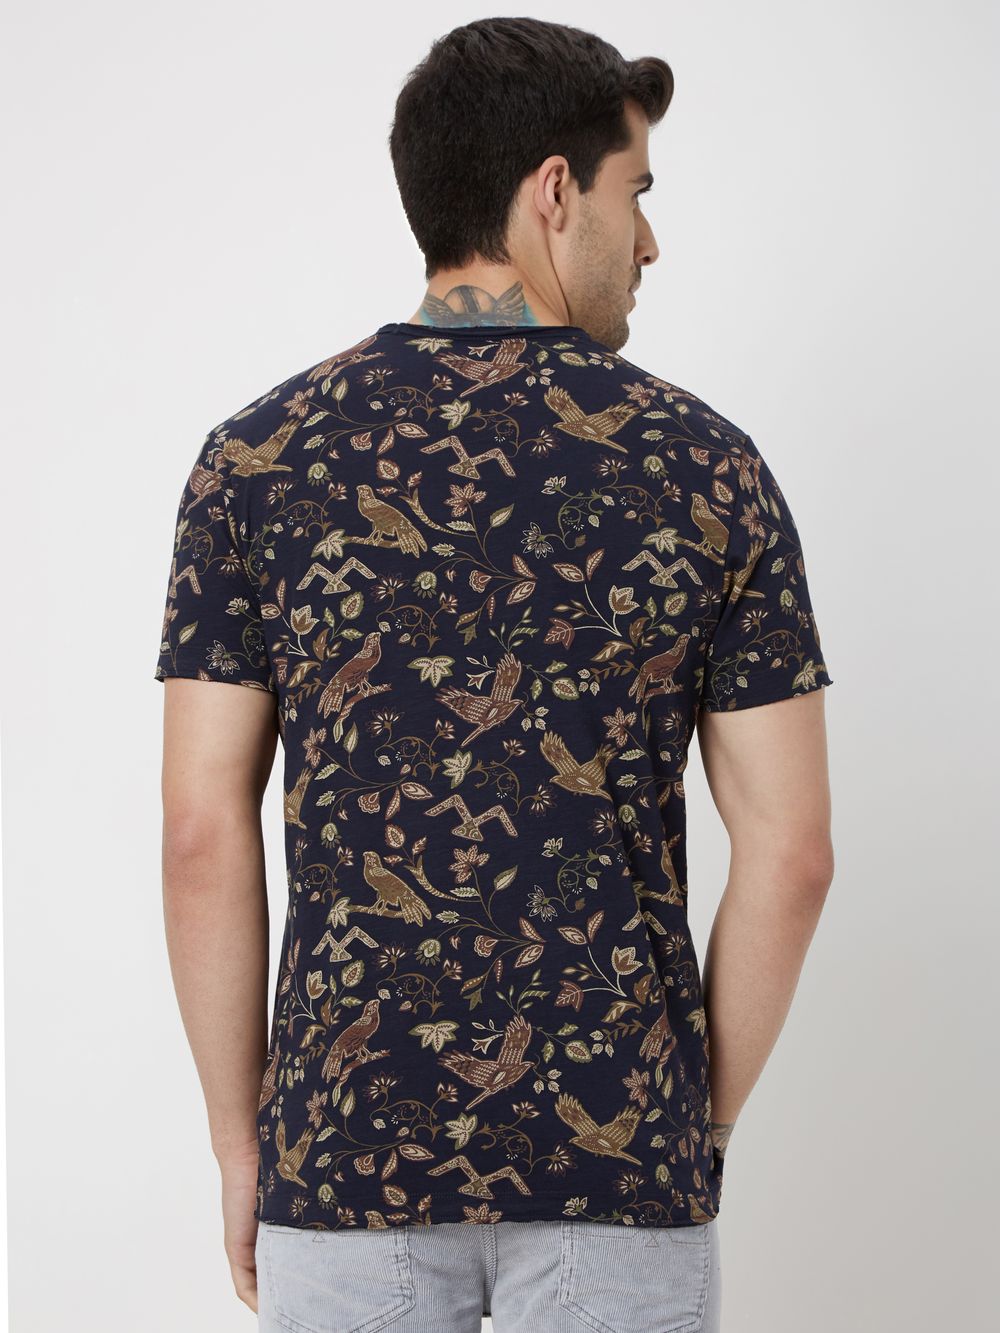 Navy & Khaki Floral Print Slub Jersey T-Shirt